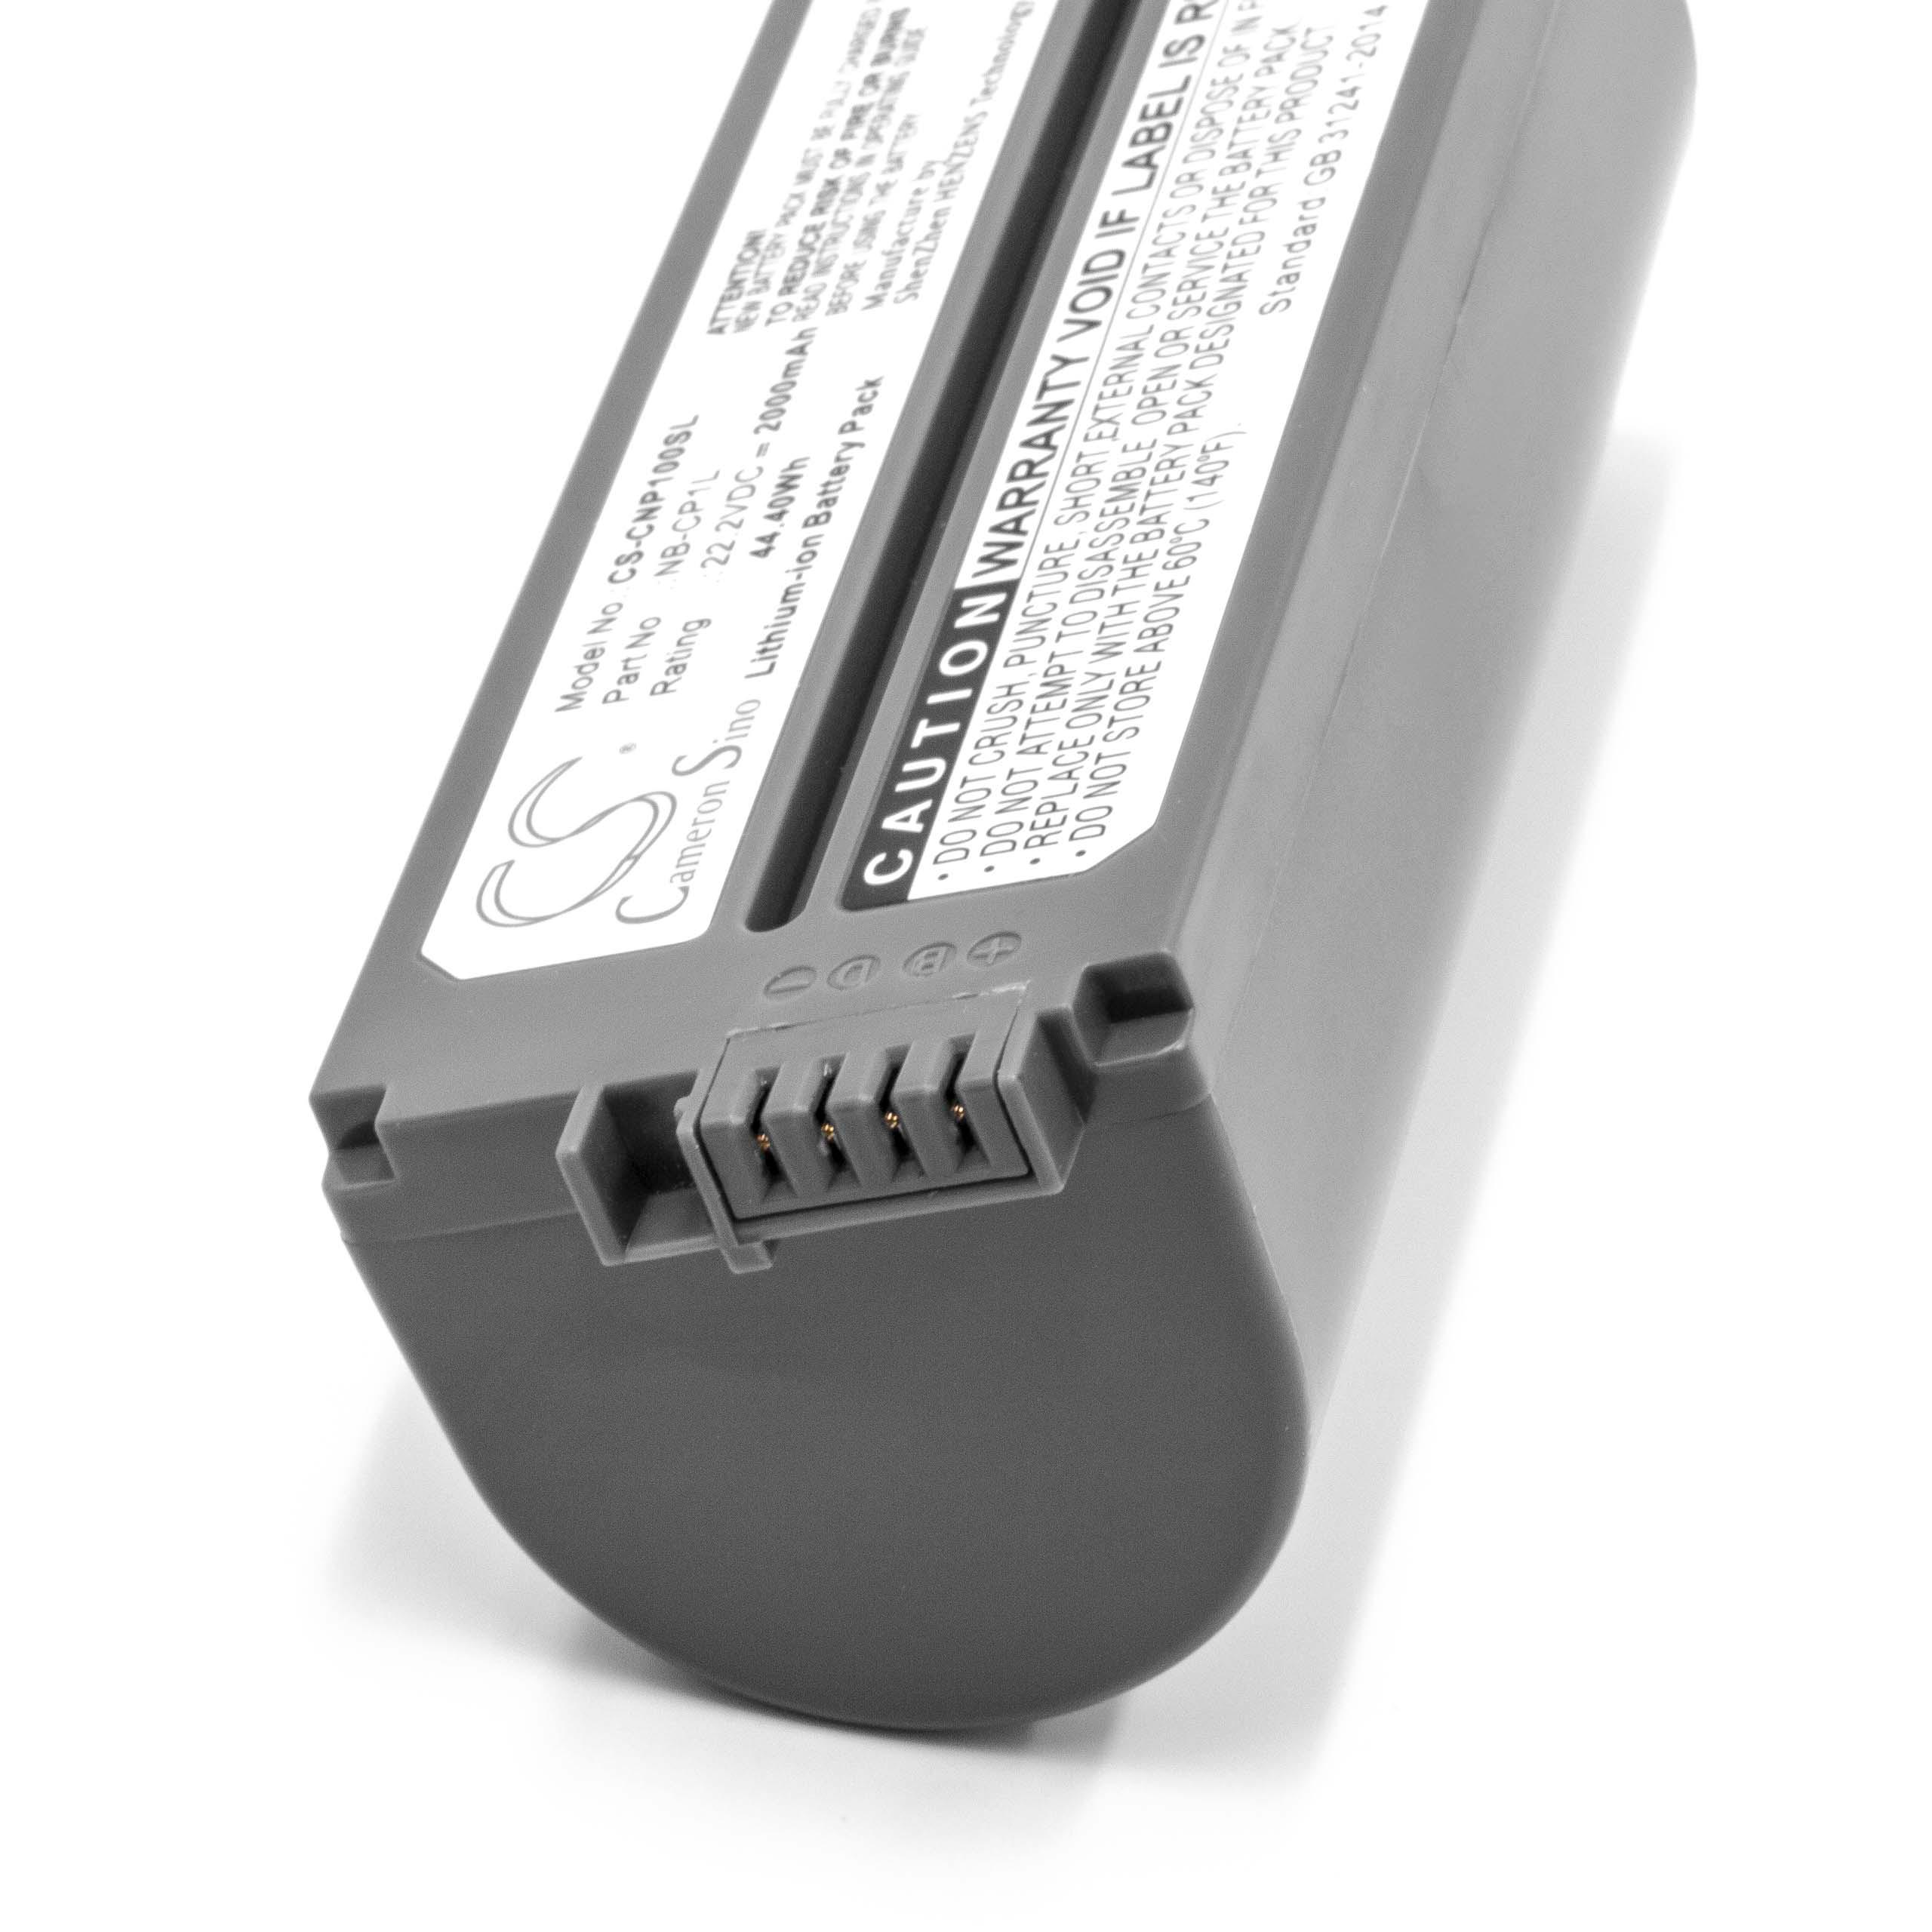 Batteria per stampante sostituisce Canon NB-CP2L, NB-CP1L, CS-CP2L, CS-CP2, CP-2L Canon - 2000mAh 22,2V Li-Ion